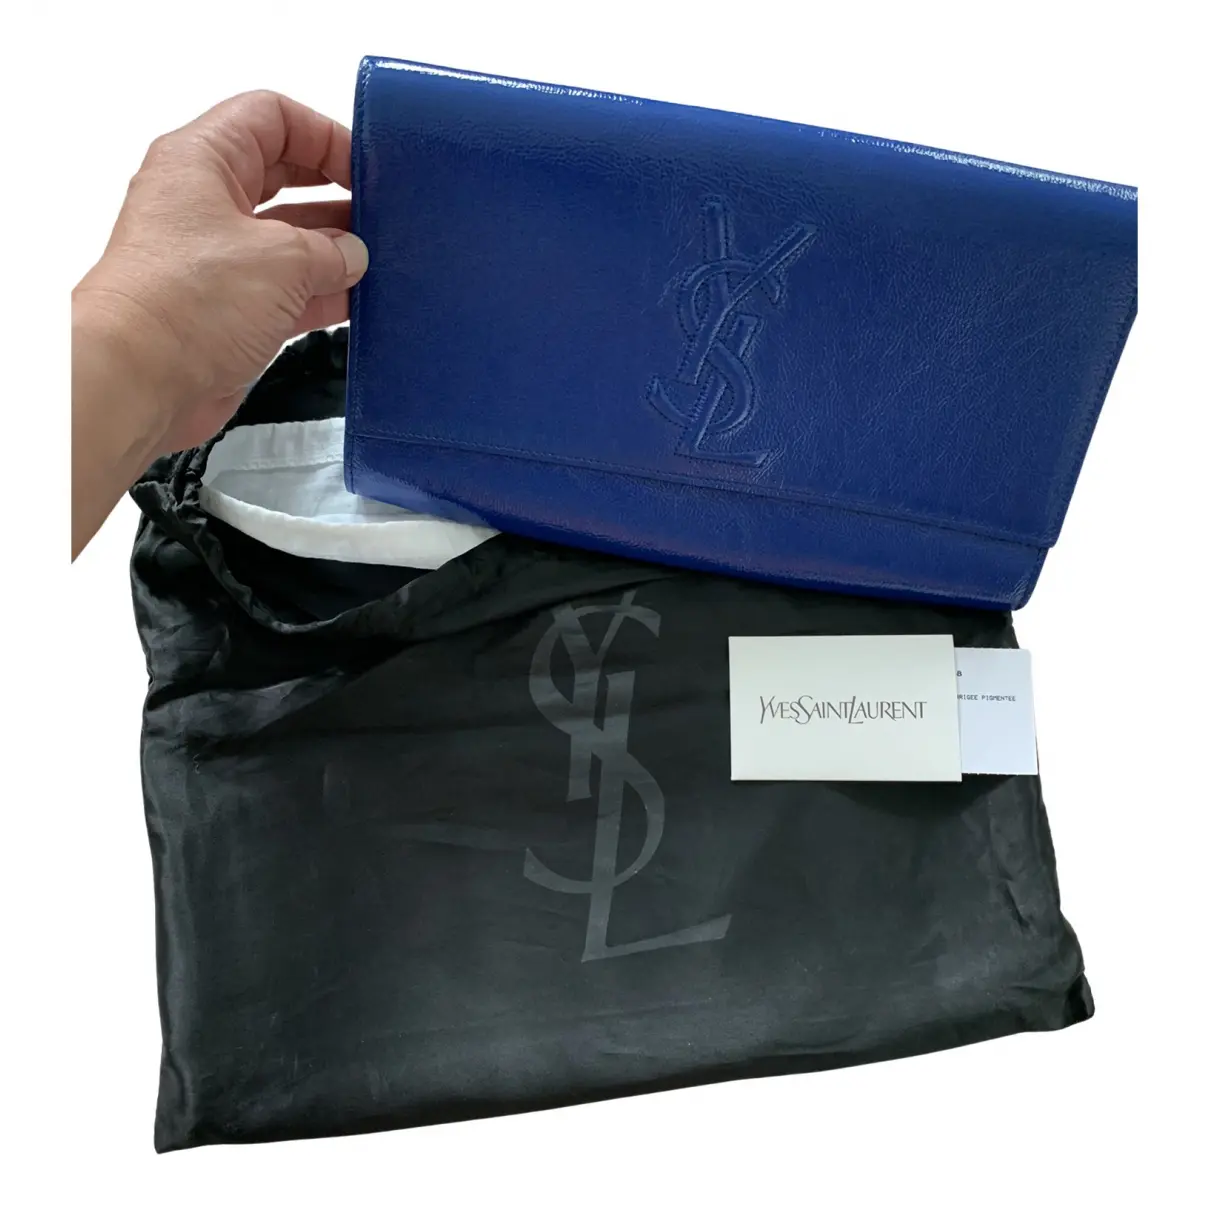 Buy Yves Saint Laurent Belle de Jour patent leather clutch bag online